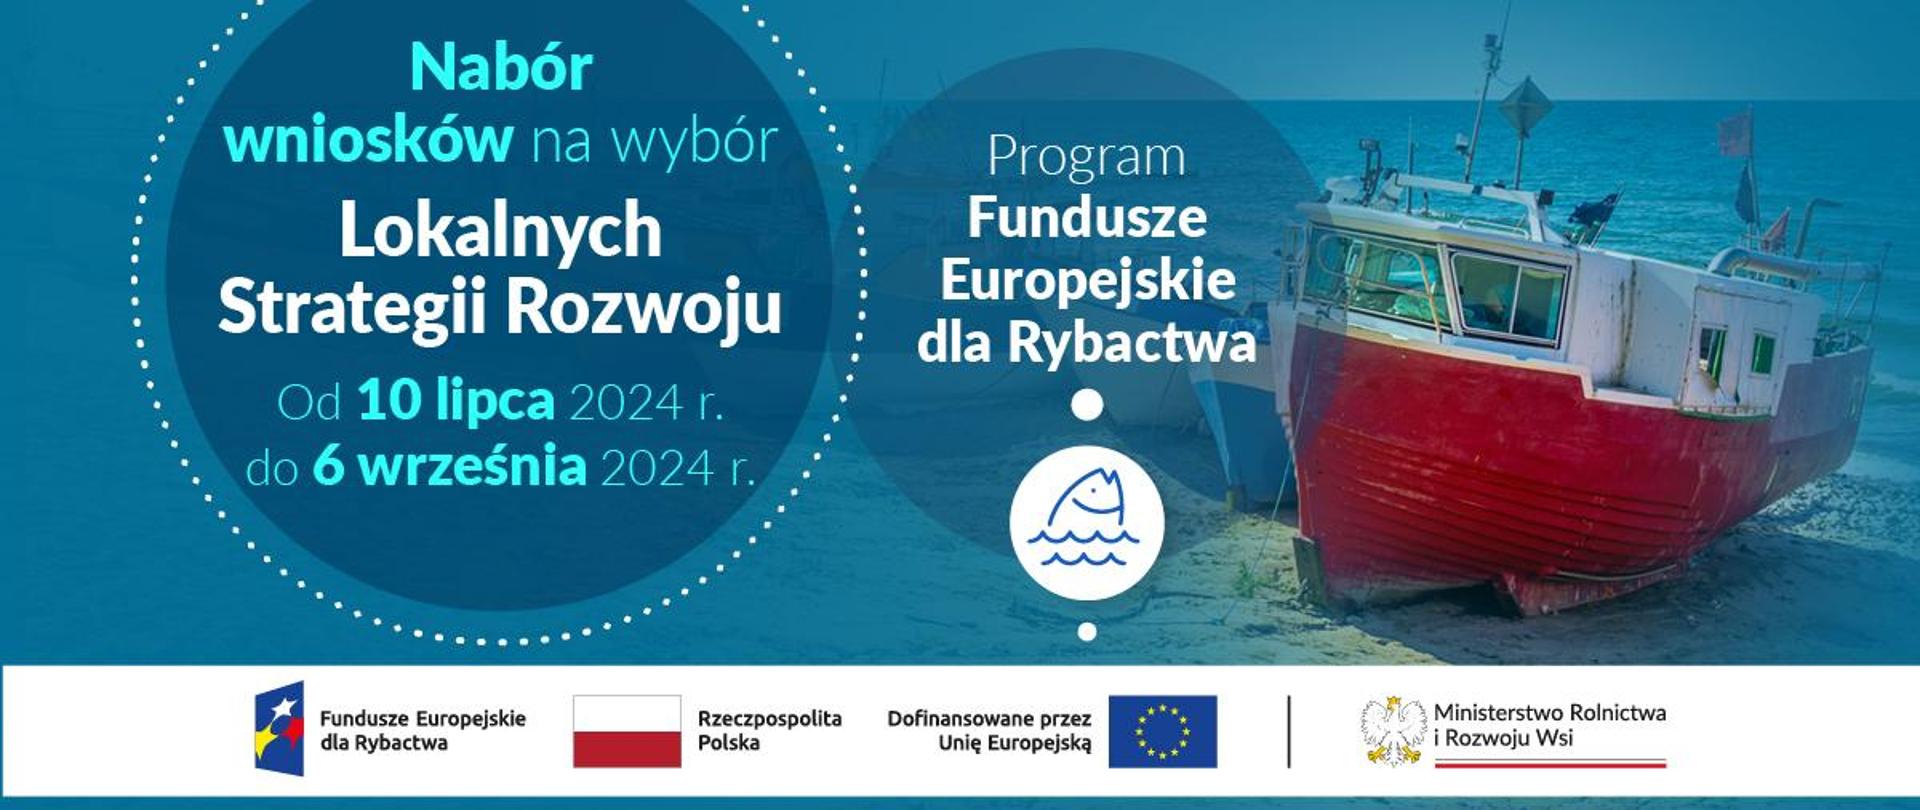 Program Fundusze Europejskie dla Rybactwa – nabór wniosków na wybór LSR